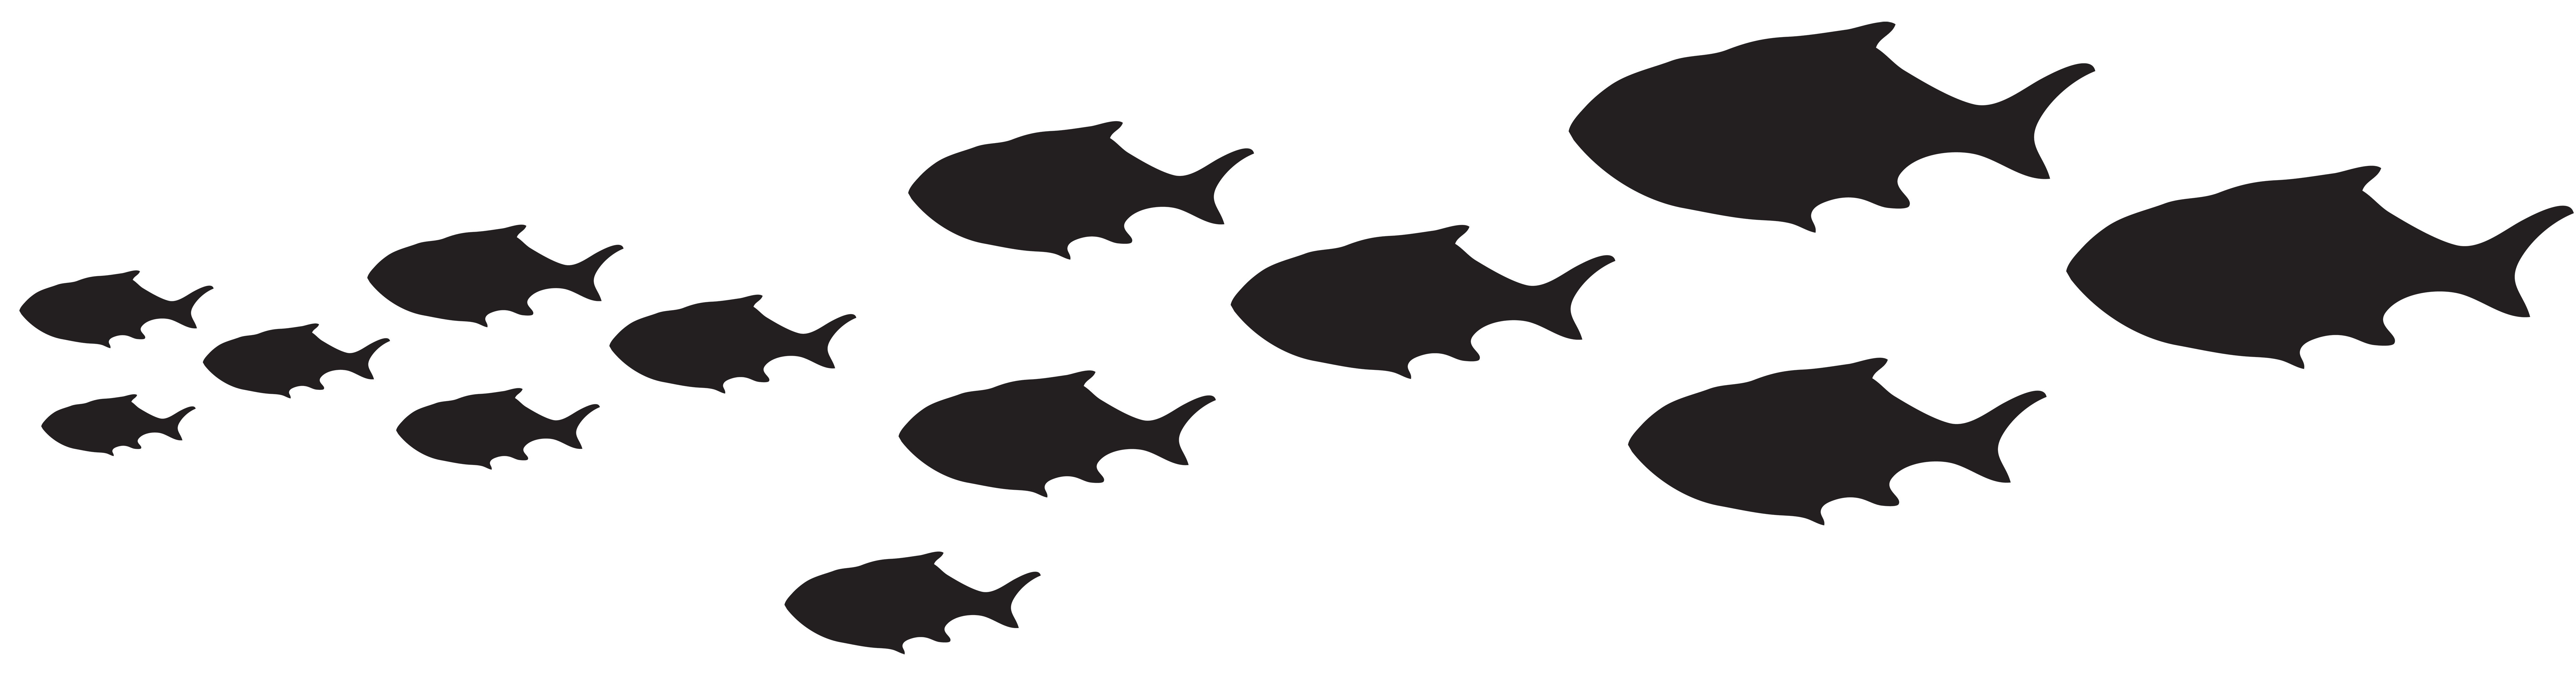 fish silhouette clip art - photo #48